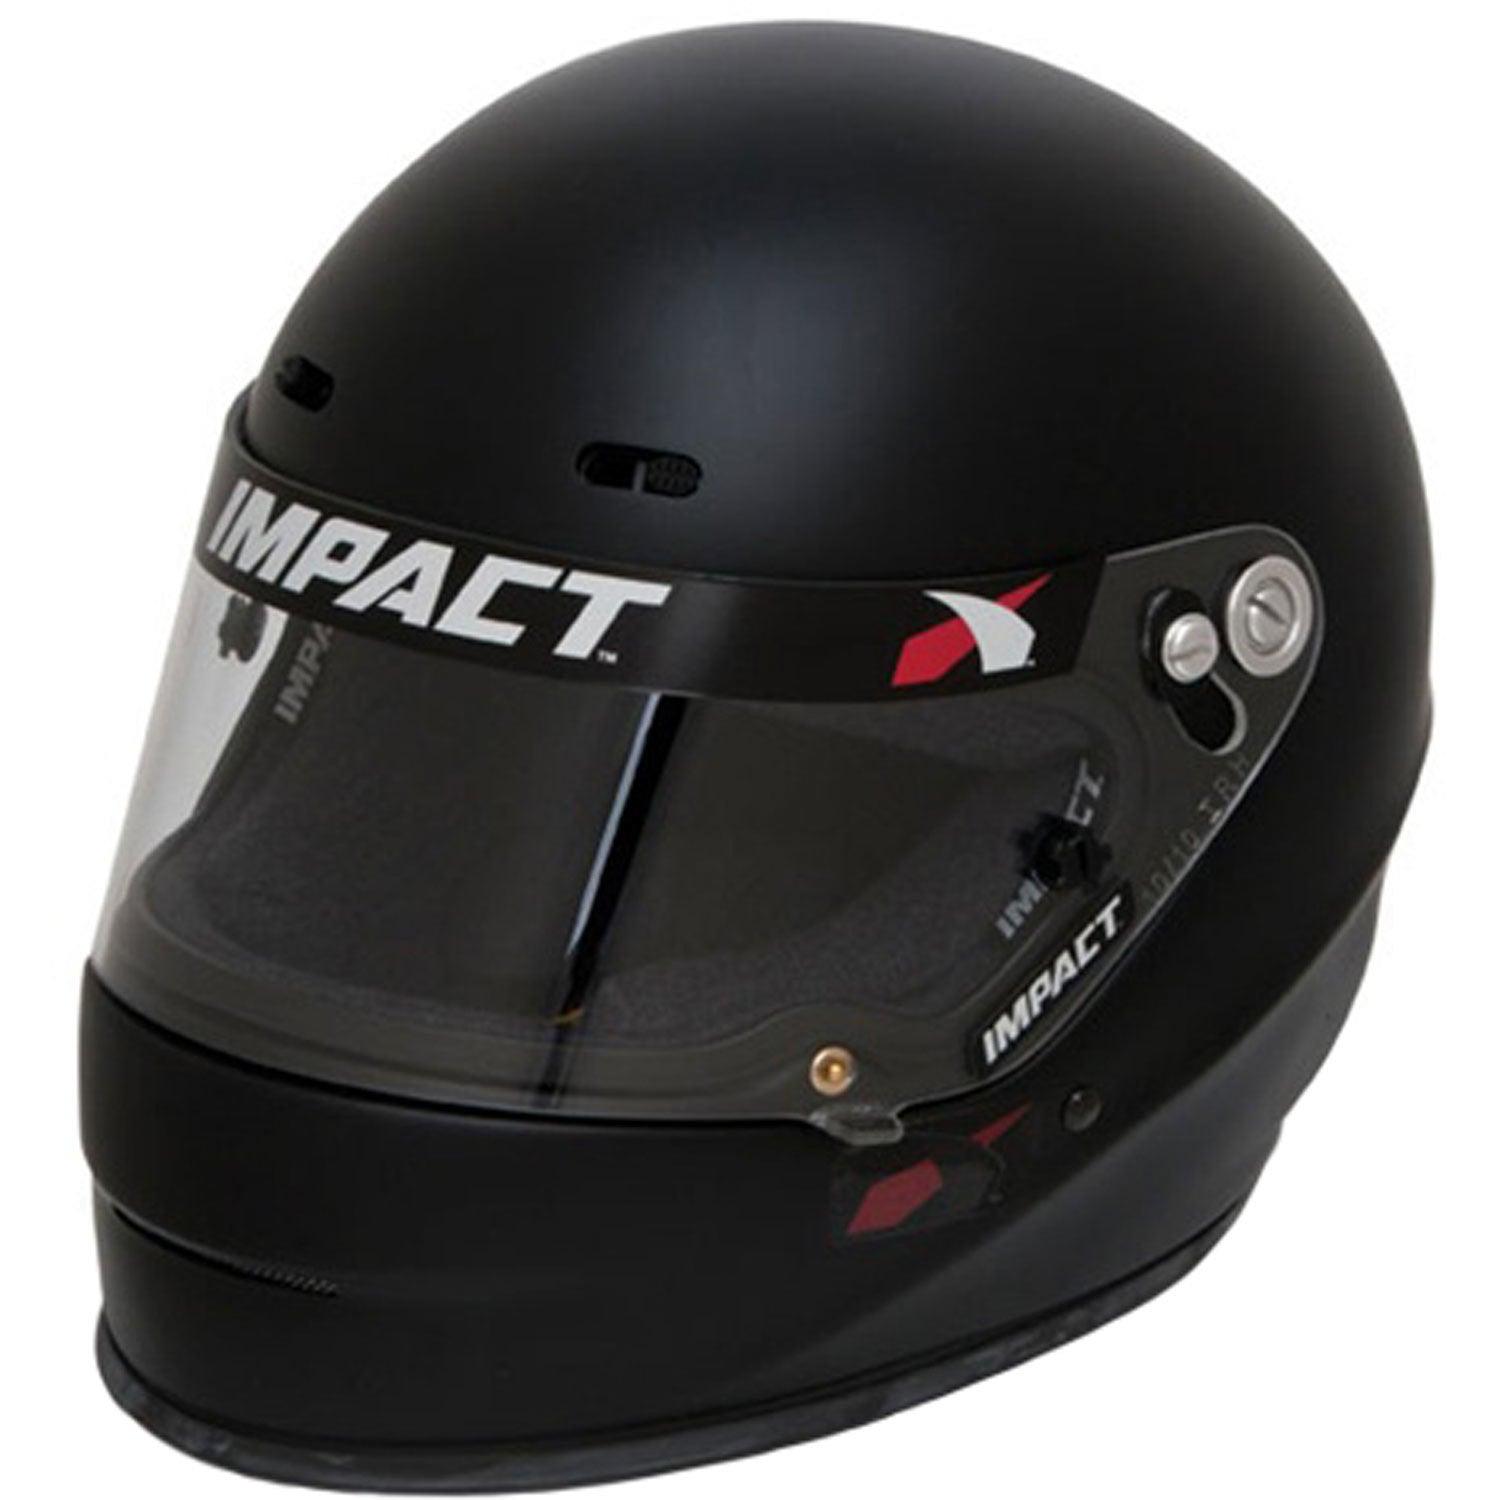 Helmet 1320 Medium Flat Black SA2020 - Burlile Performance Products